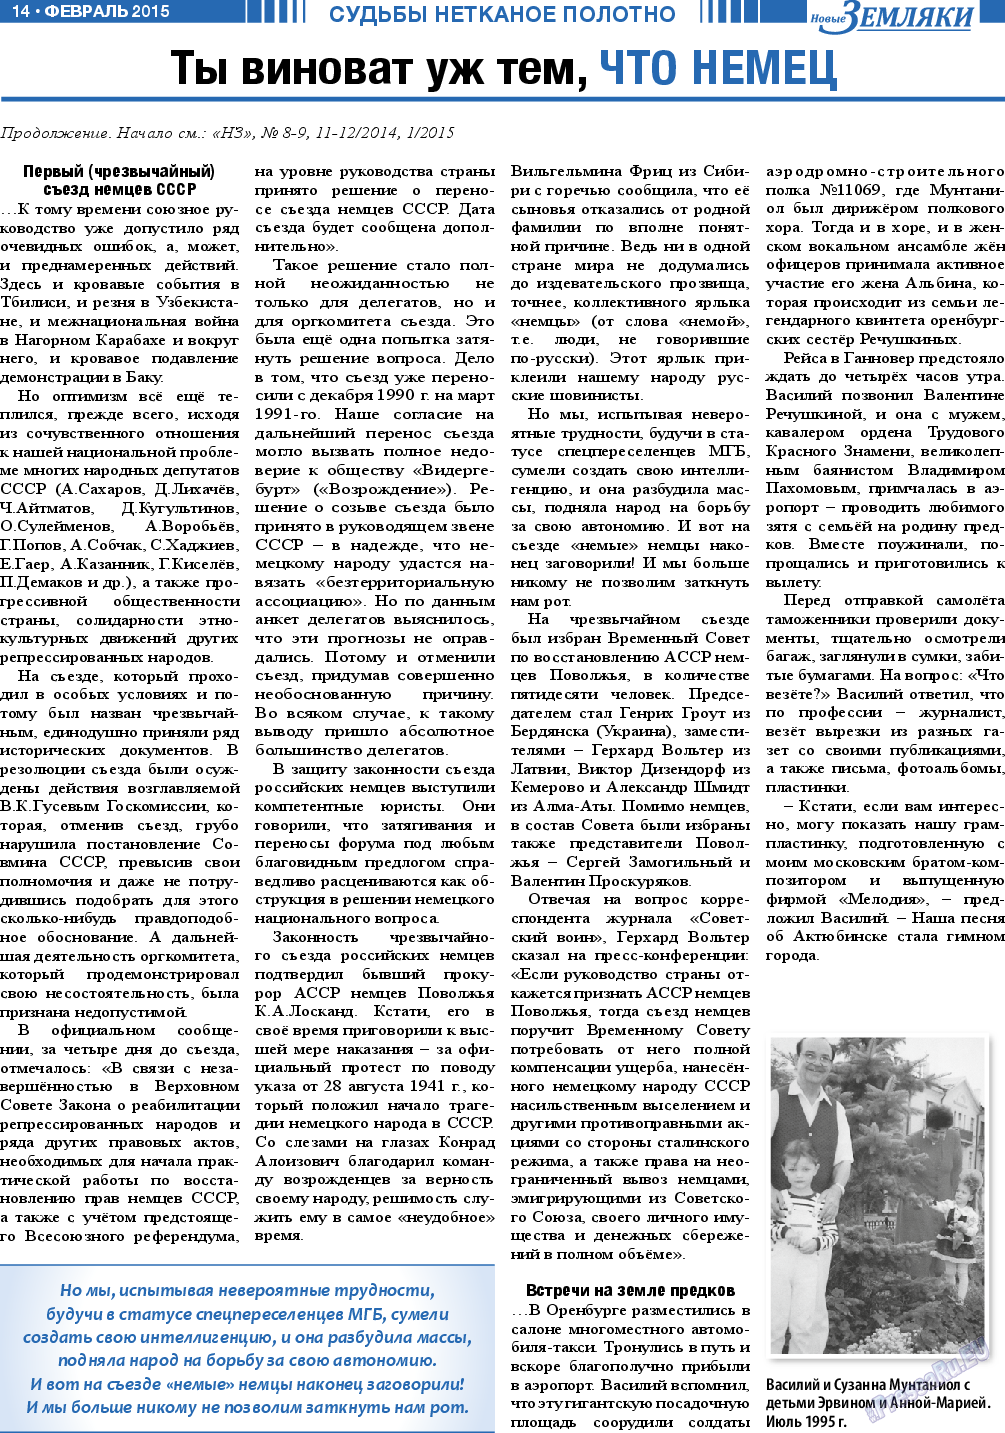 Новые Земляки, газета. 2015 №2 стр.14